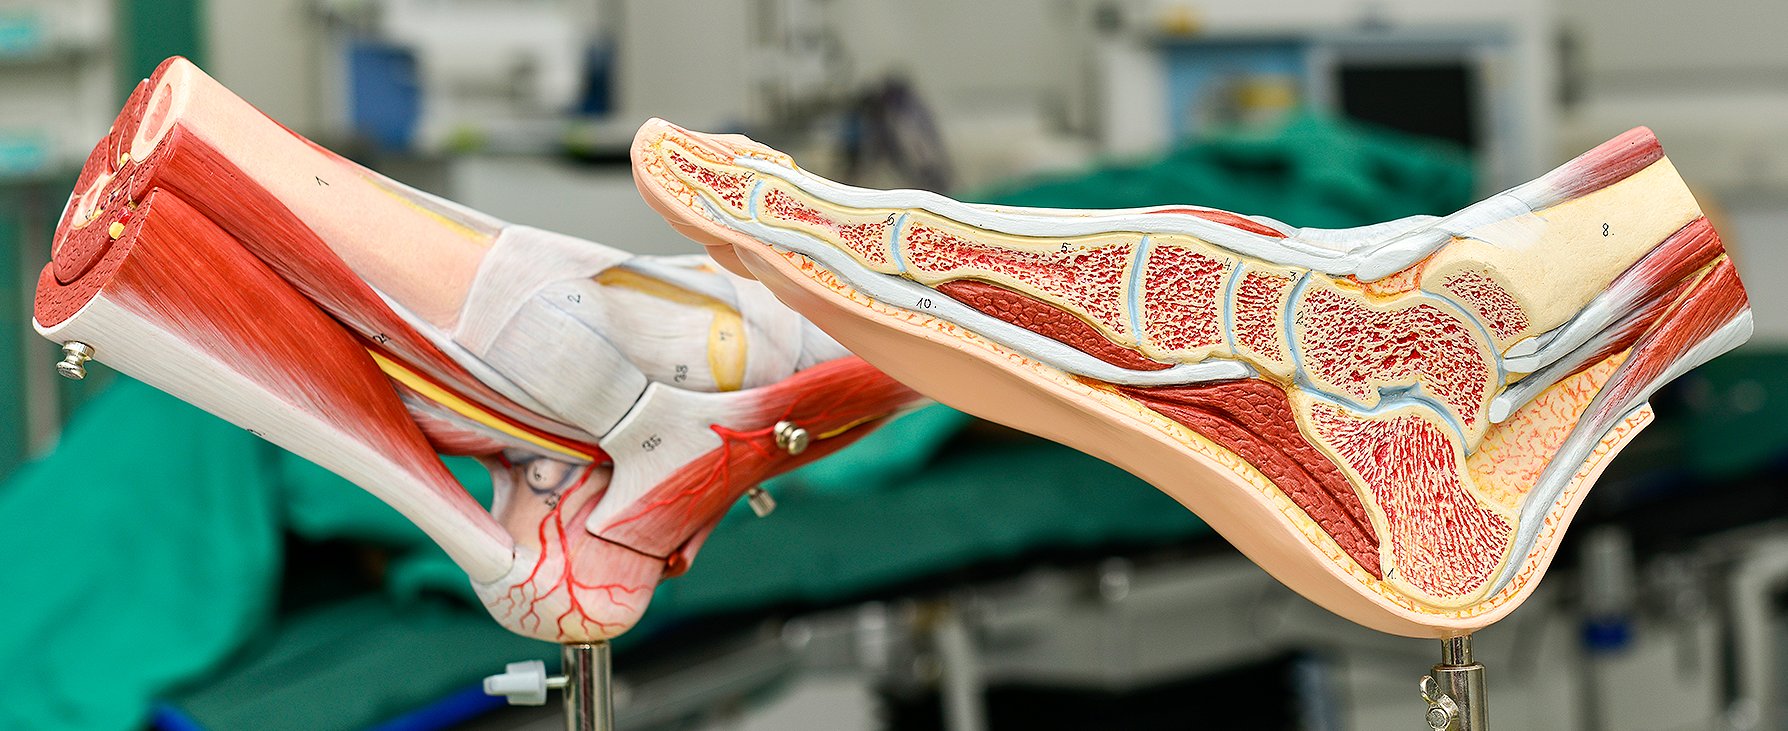 Zwei anatomische Modelle des Fußes, im Hintergrund eine Ansicht der Muskeln und Sehnen, im Vordergrund ein Längsschnitt durch den Fuß 